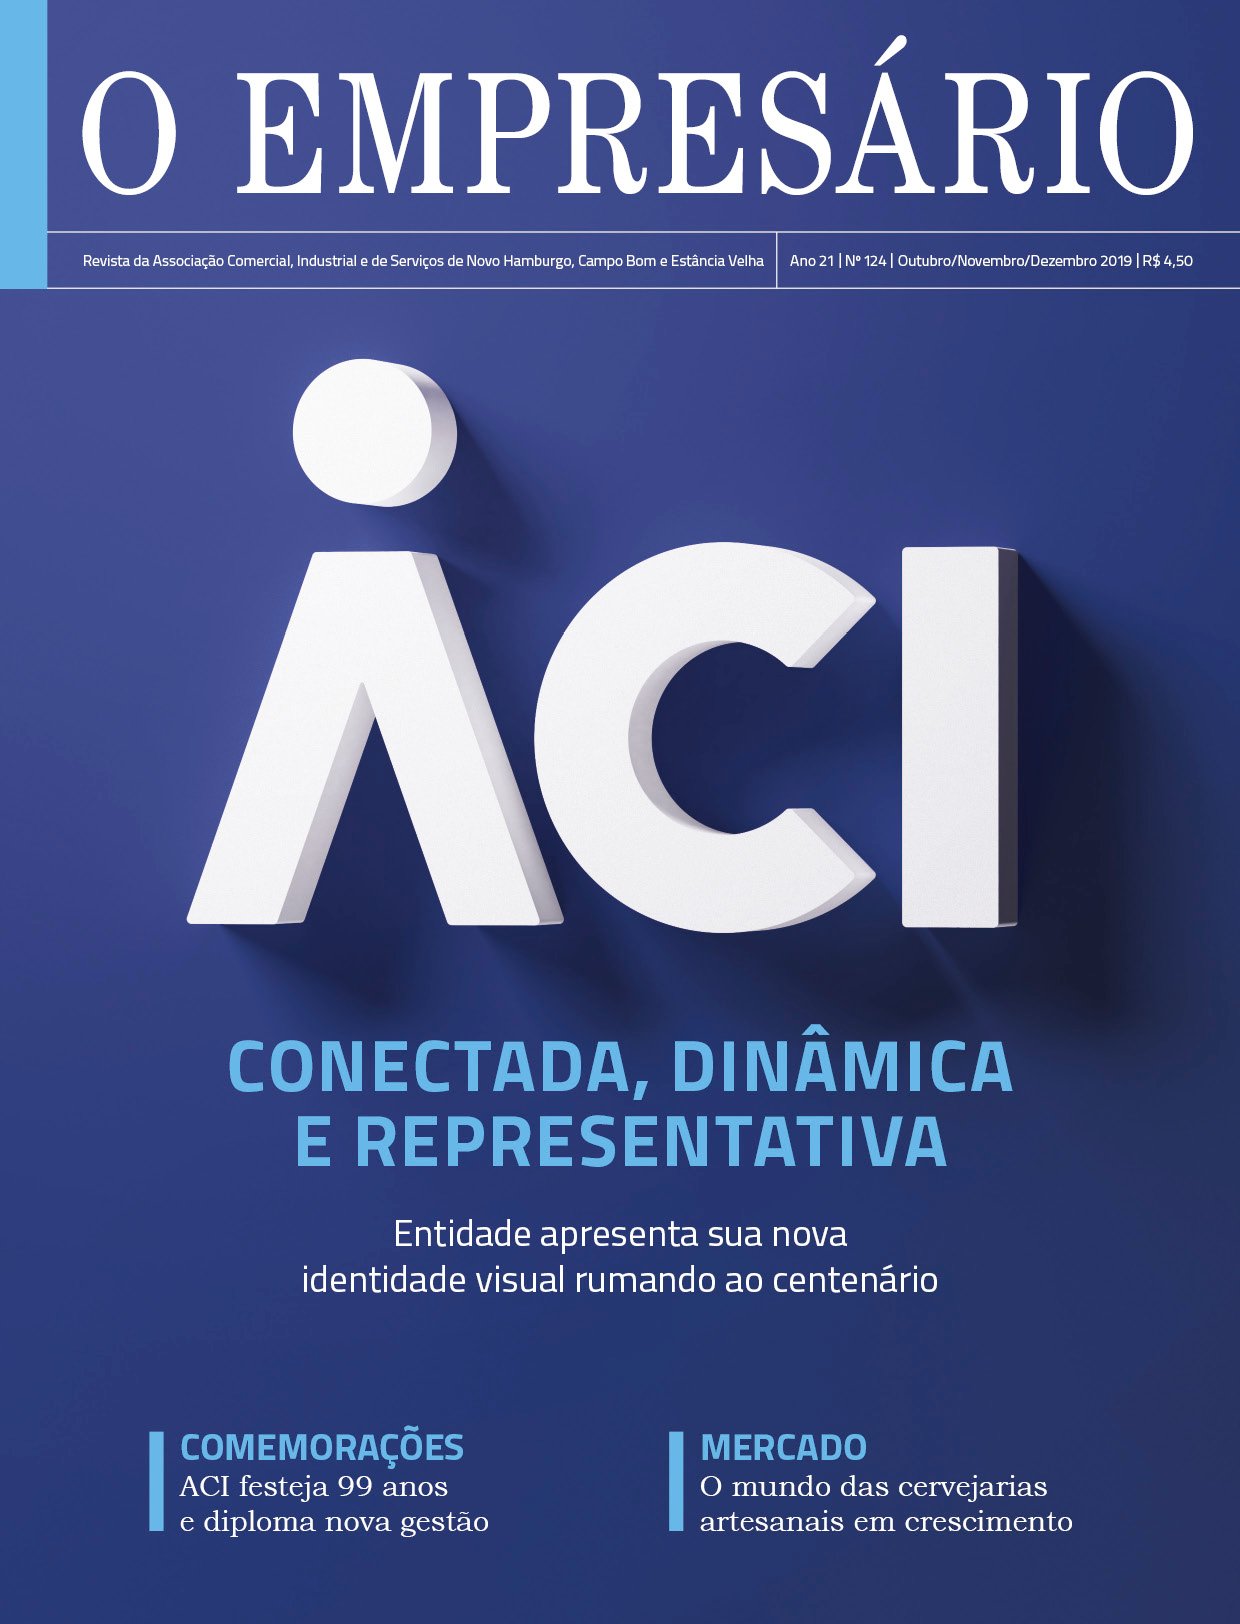 Edição de final de ano da Revista O Empresário, da ACI, está circulando